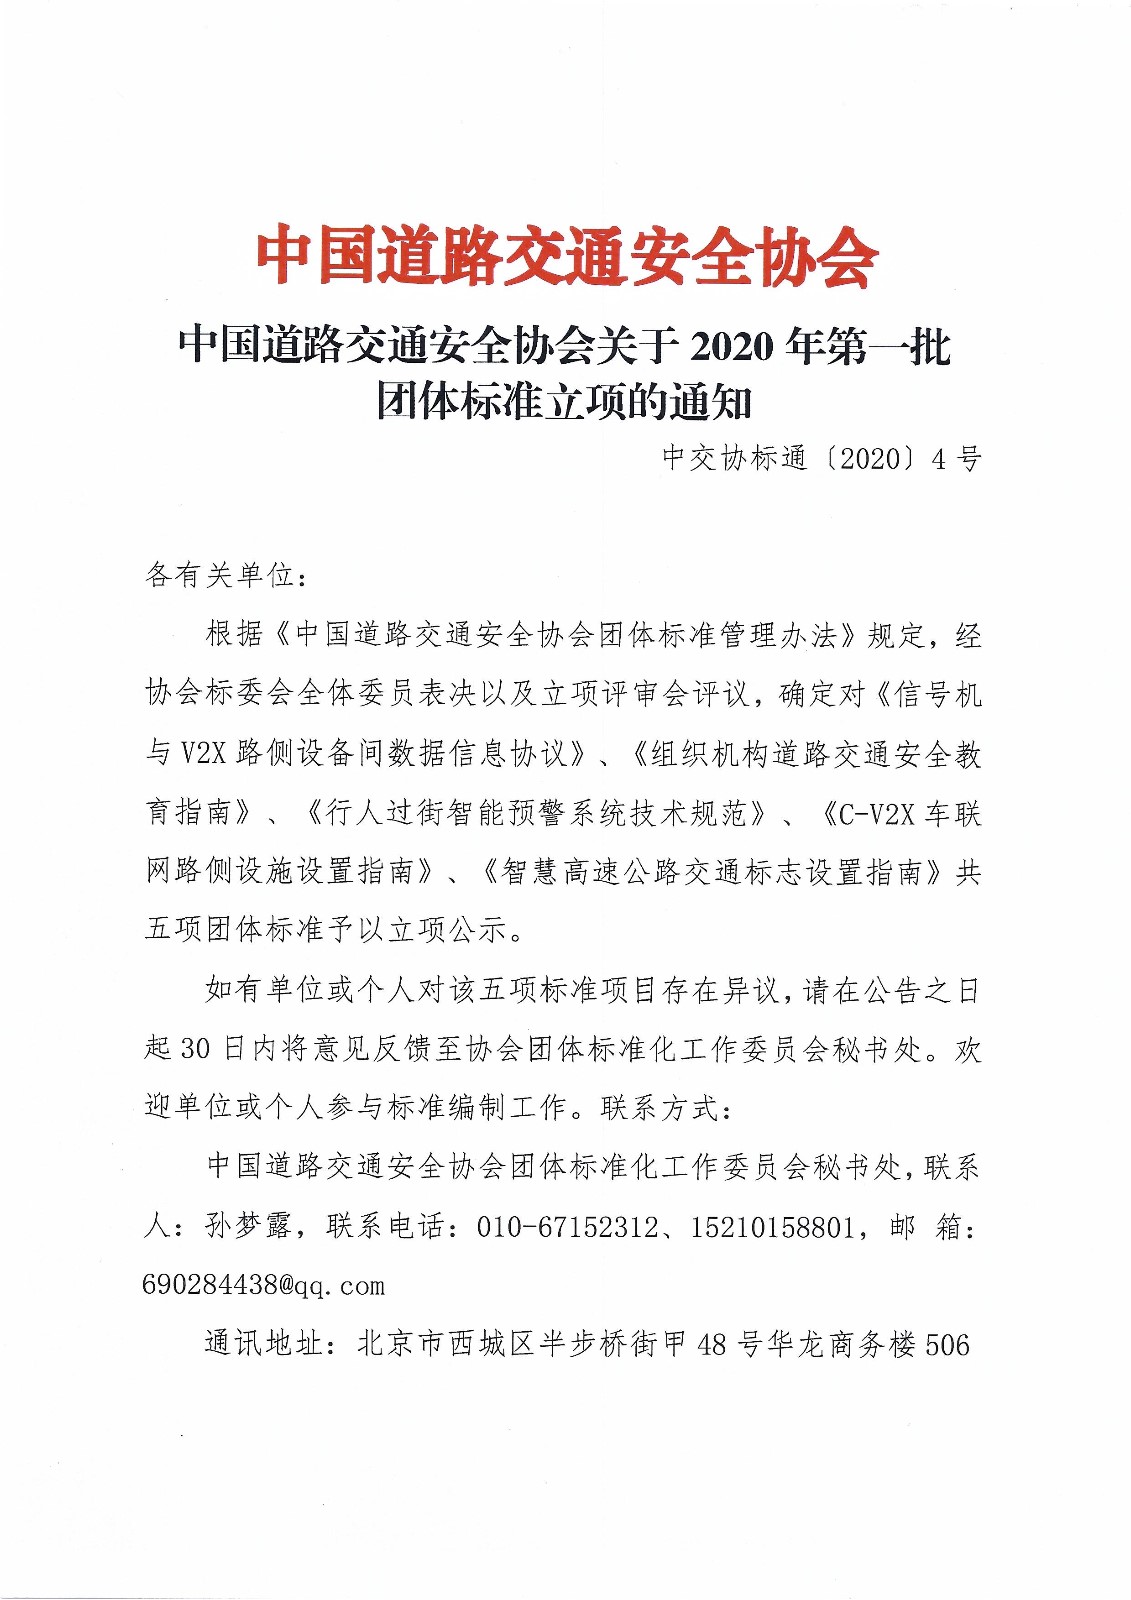 011016323245_0中国道路交通安全协会关于2020年第一批团体标准立项的通知_1.jpg